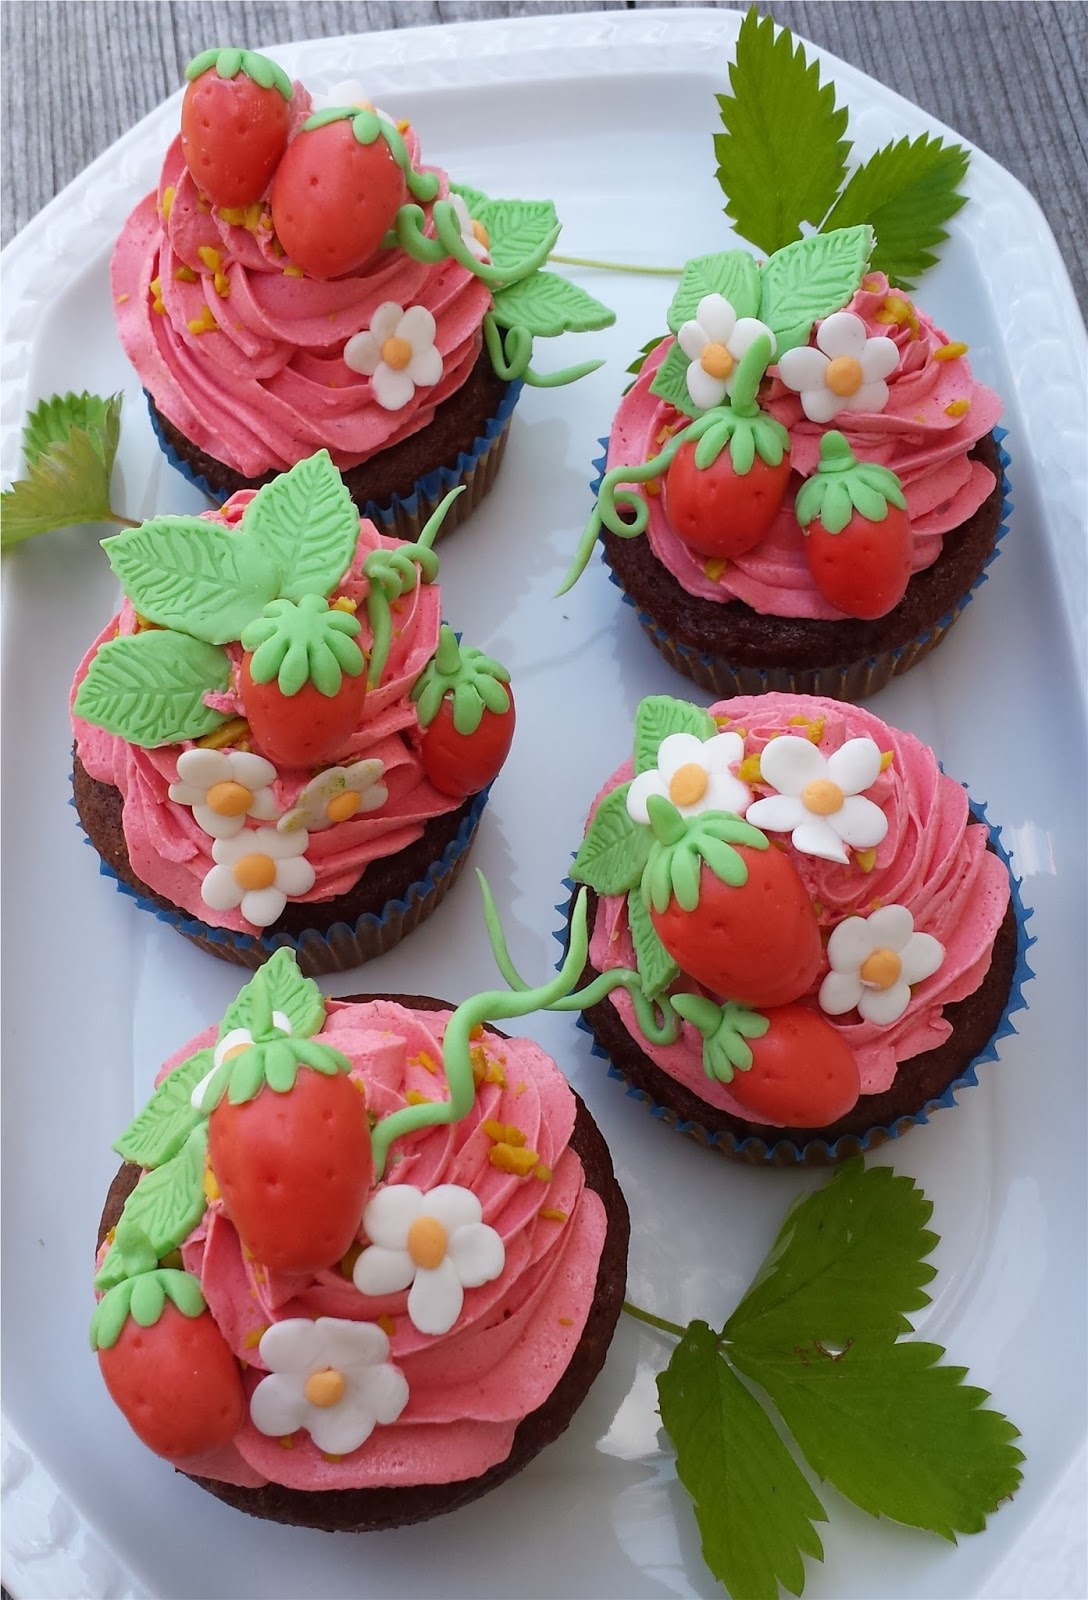 Erdbeer-Cupcakes für erdbeerarme Zeiten